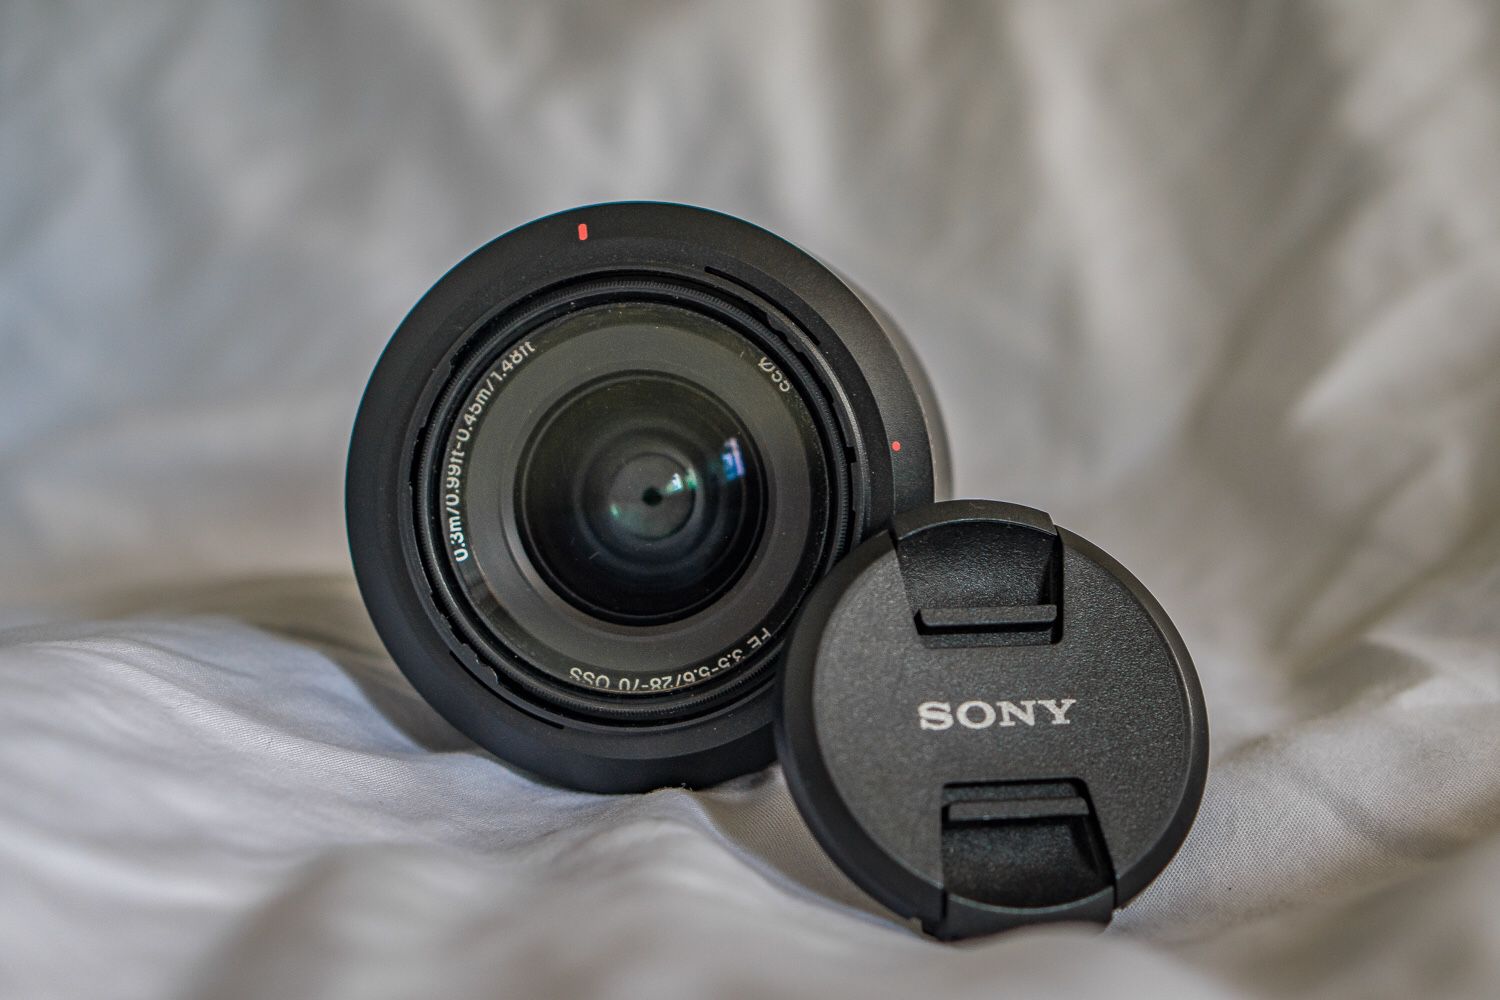 Sony Emount lens 28-70mm great lens